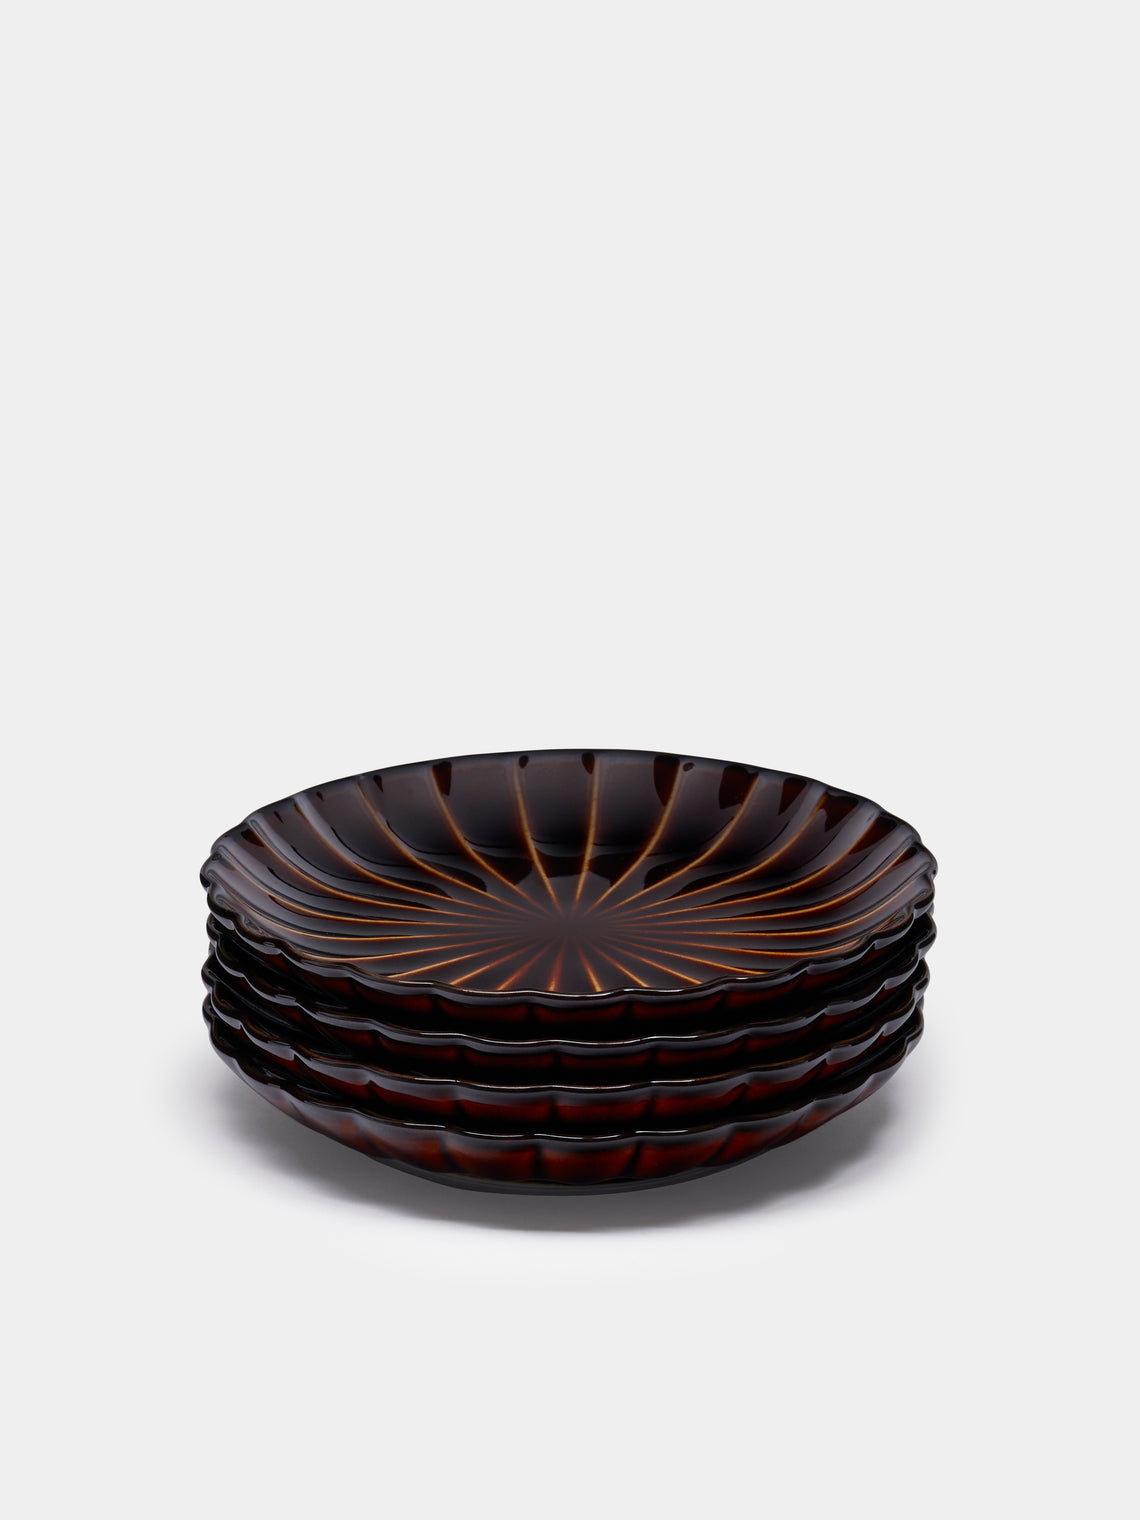 Kaneko Kohyo - Giyaman Urushi Ceramic Saucers (Set of 4) - Brown - ABASK